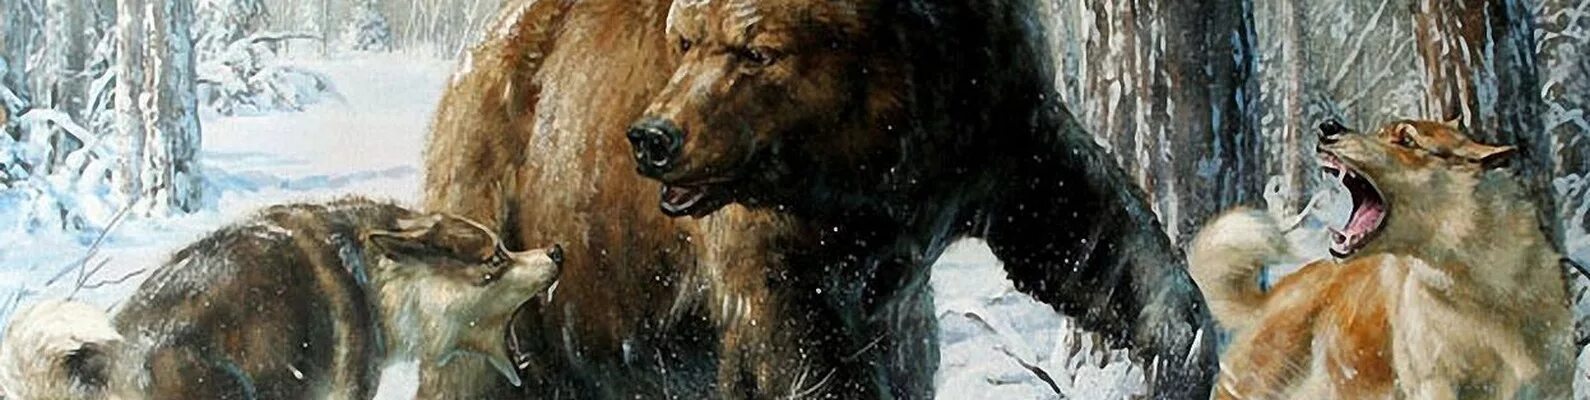 Русский медведь и волк